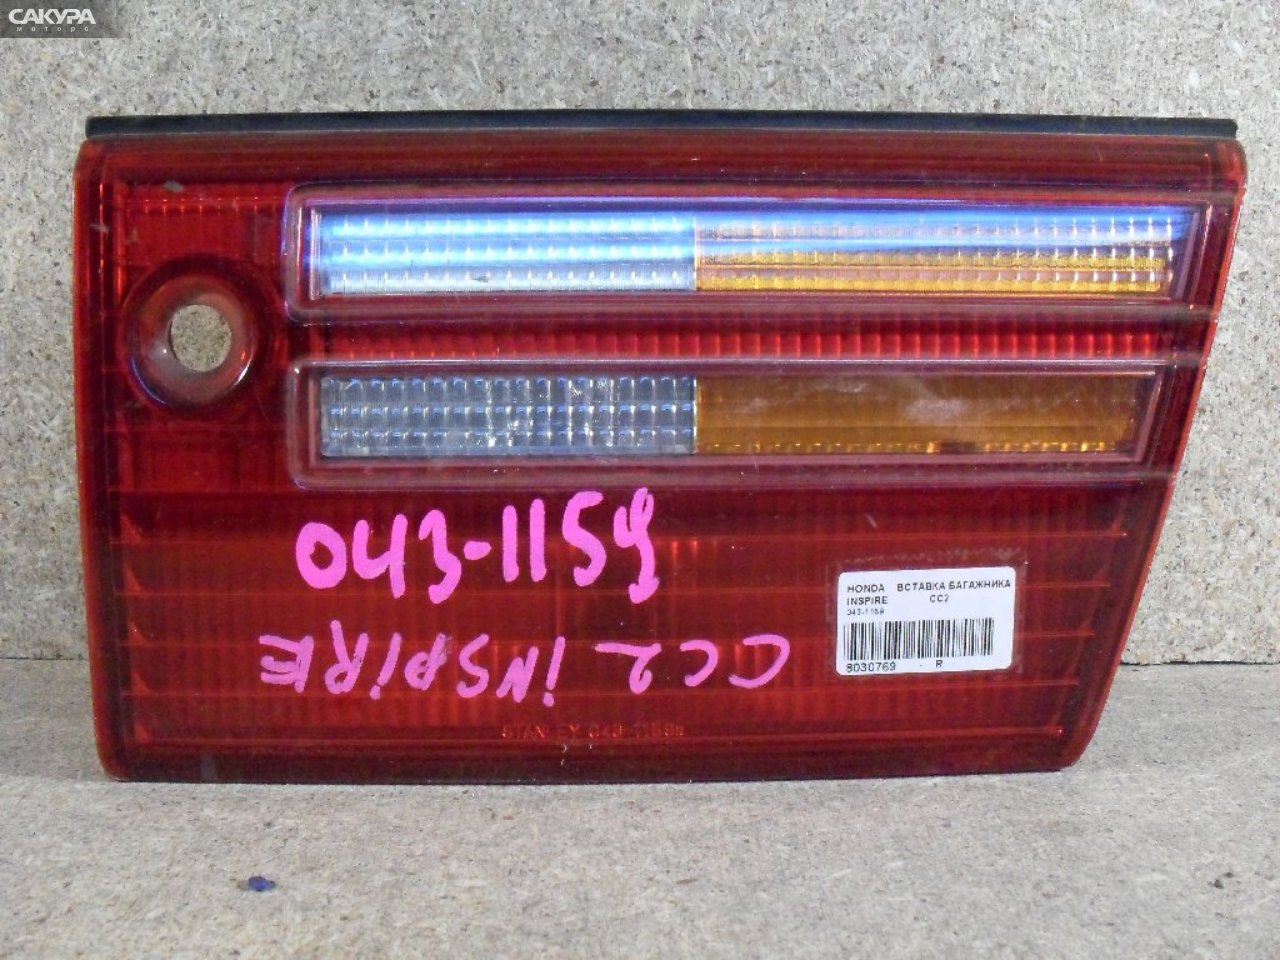 Фонарь вставка багажника правый Honda Inspire CC2 043-1159: купить в Сакура Абакан.